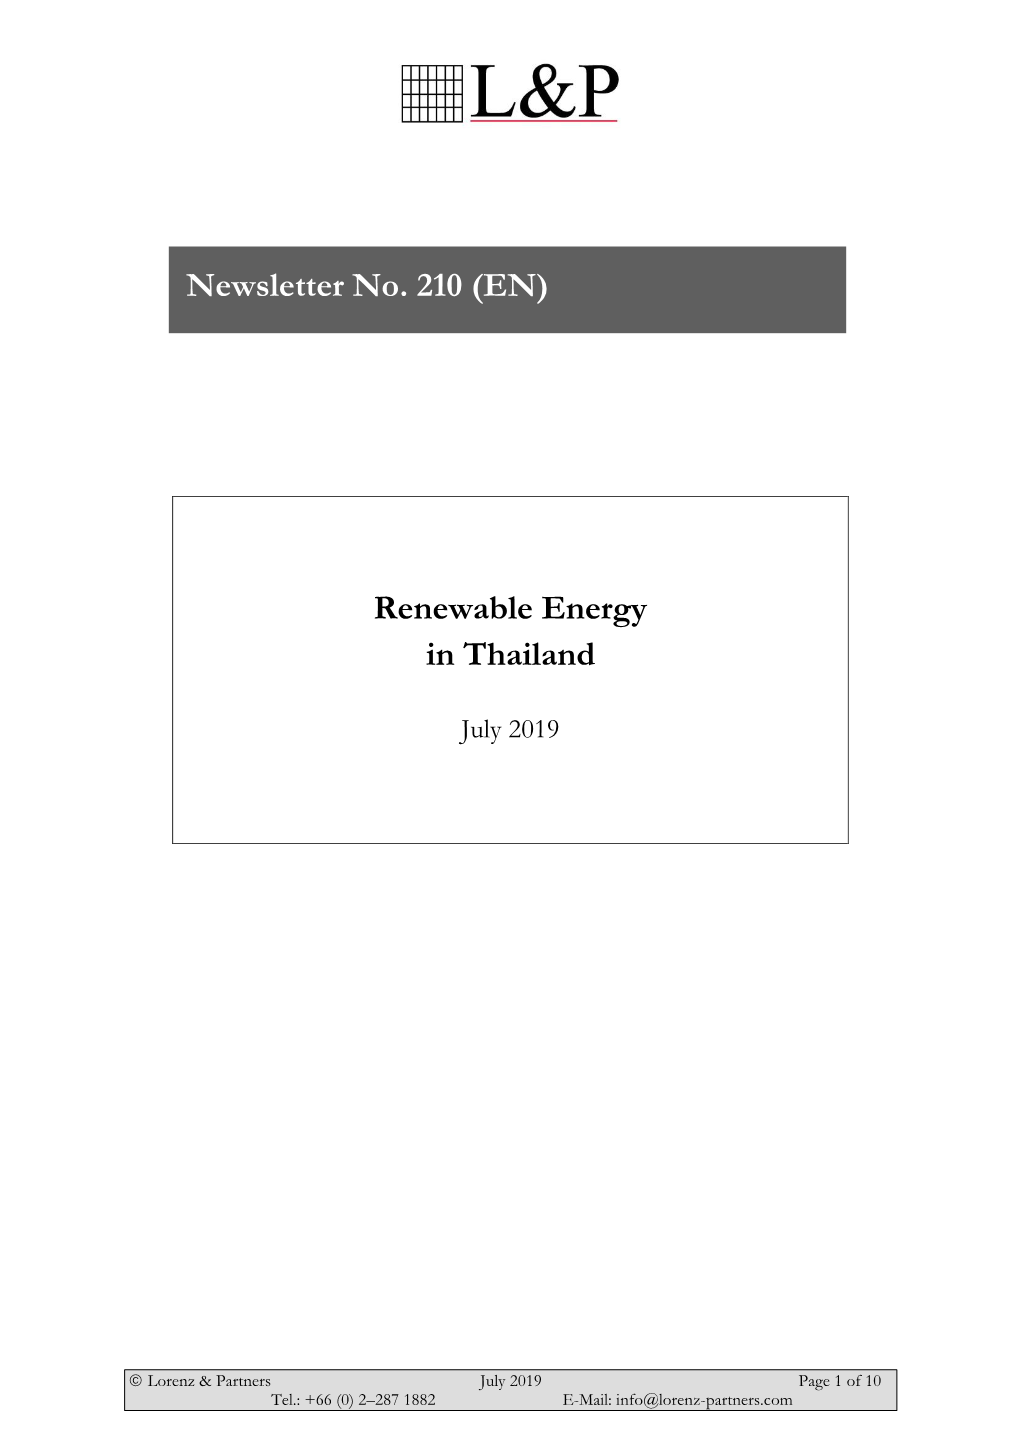 N210 Renewable Energy in Thailand